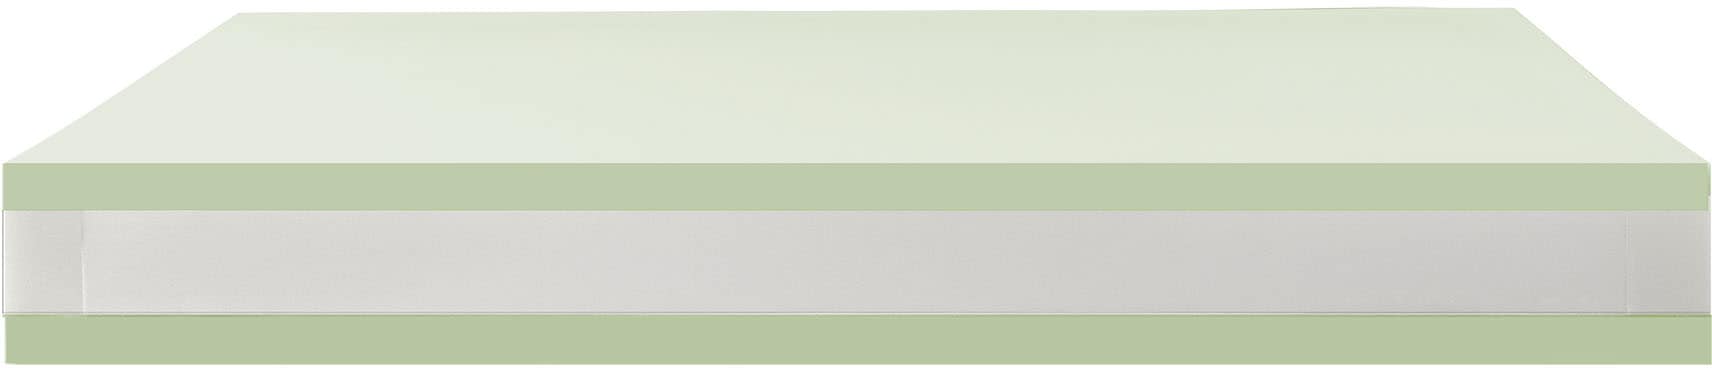 Breckle Northeim Taschenfederkernmatratze »TFK First Quality Matratze von Breckle Northeim, optimale Matratzenkomforthöhe mit 24cm und besonders hochwertigem Matratzenbezug«, 1000 Federn, (1 St.), 7-Zonen Taschenfederkernmatratze, Made in Germany